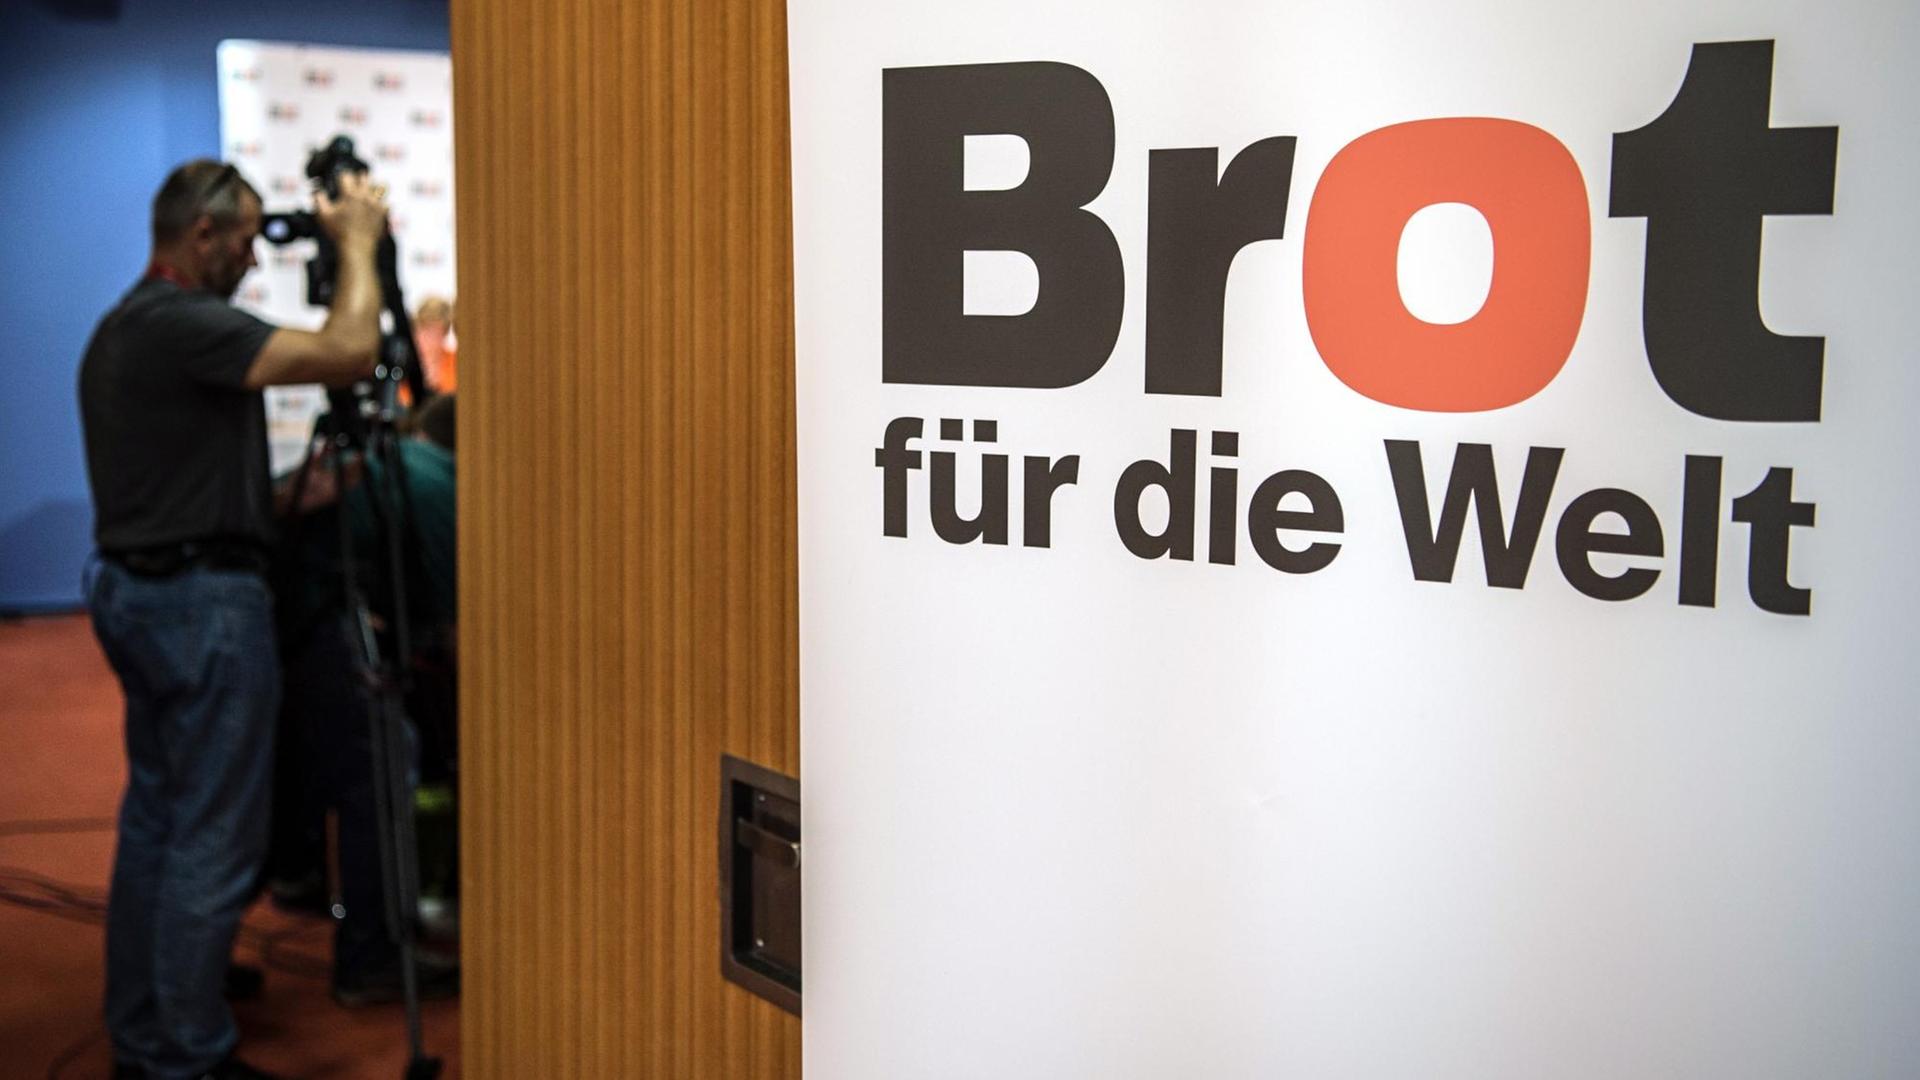 Das Logo des Evangelischen Hilfswerks "Brot für die Welt" steht an einem Aufsteller bei der Bilanz-Pressekonferenz der Organisation am 04.08.2016 in Berlin. Foto: Wolfram Kastl/dpa | Verwendung weltweit